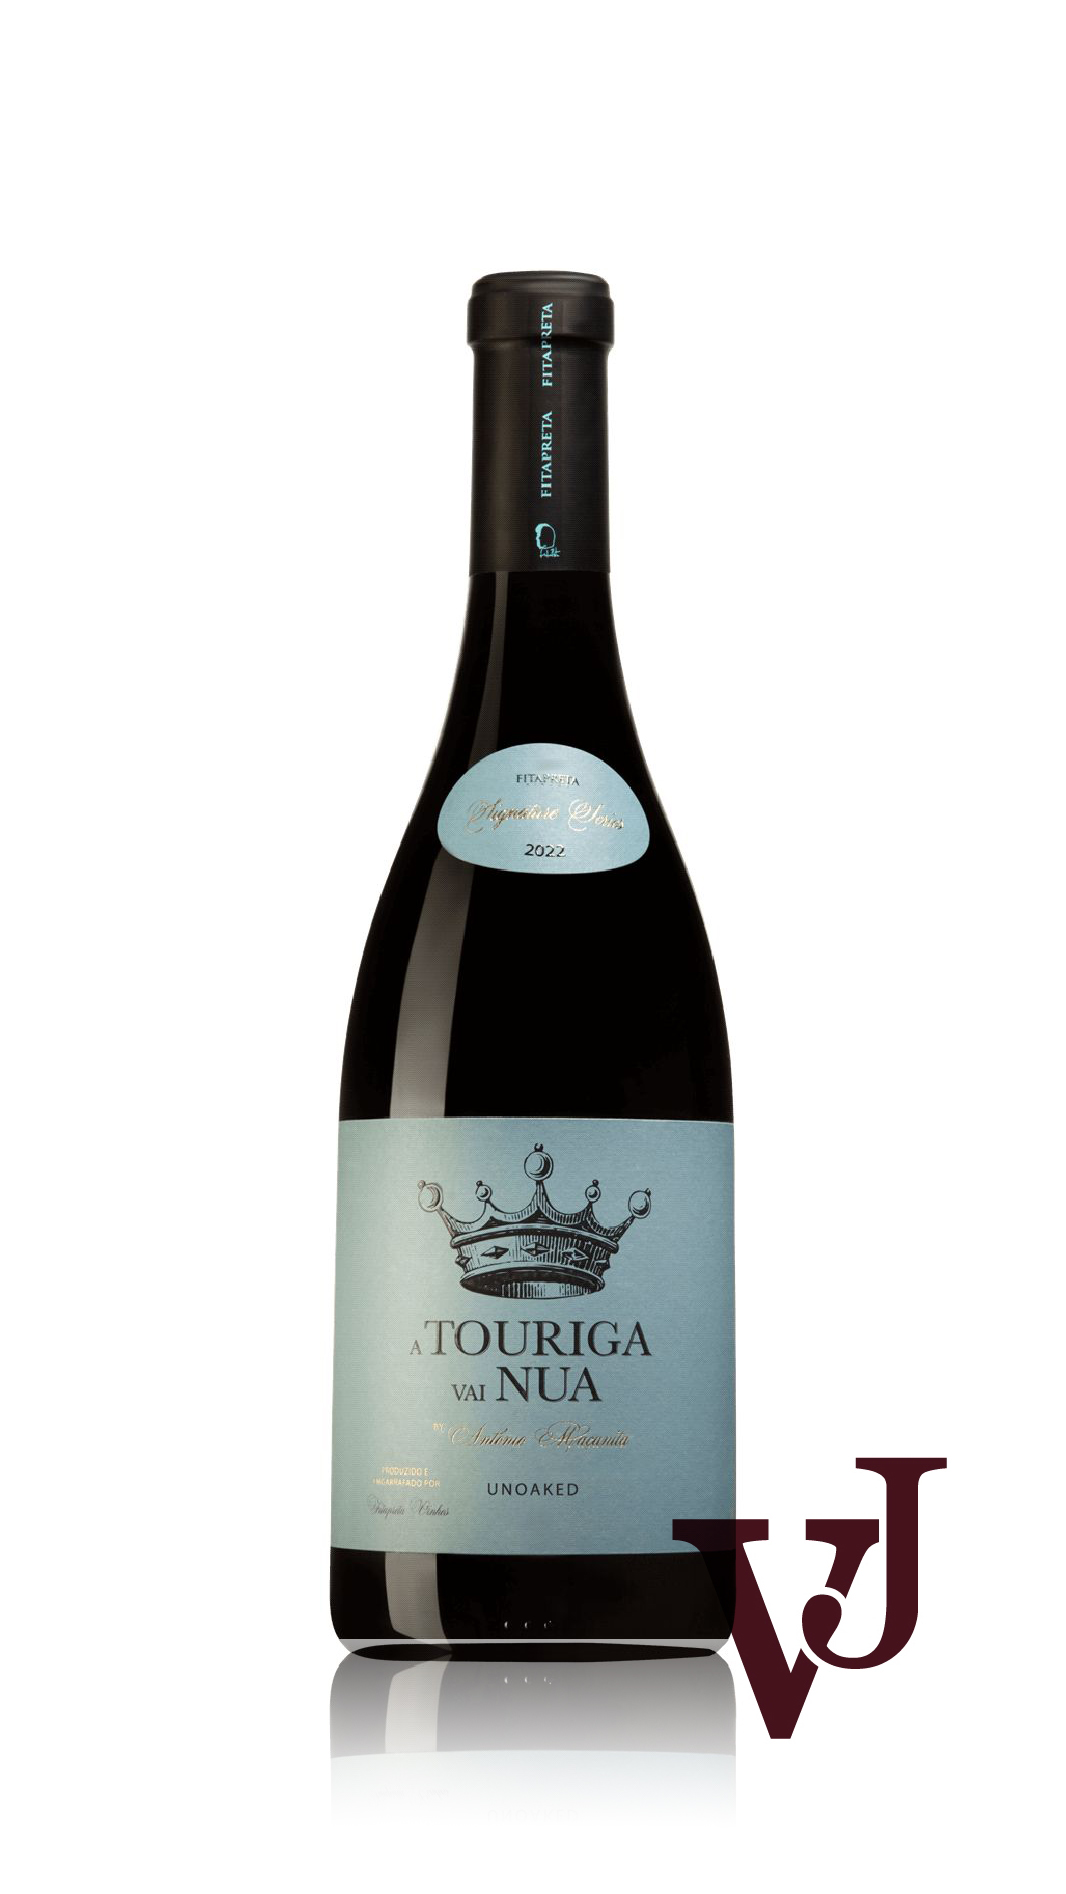 Rött Vin - Touriga Vai Nua 2022 artikel nummer 9517101 från producenten Fitapreta Vinhos från området Portugal